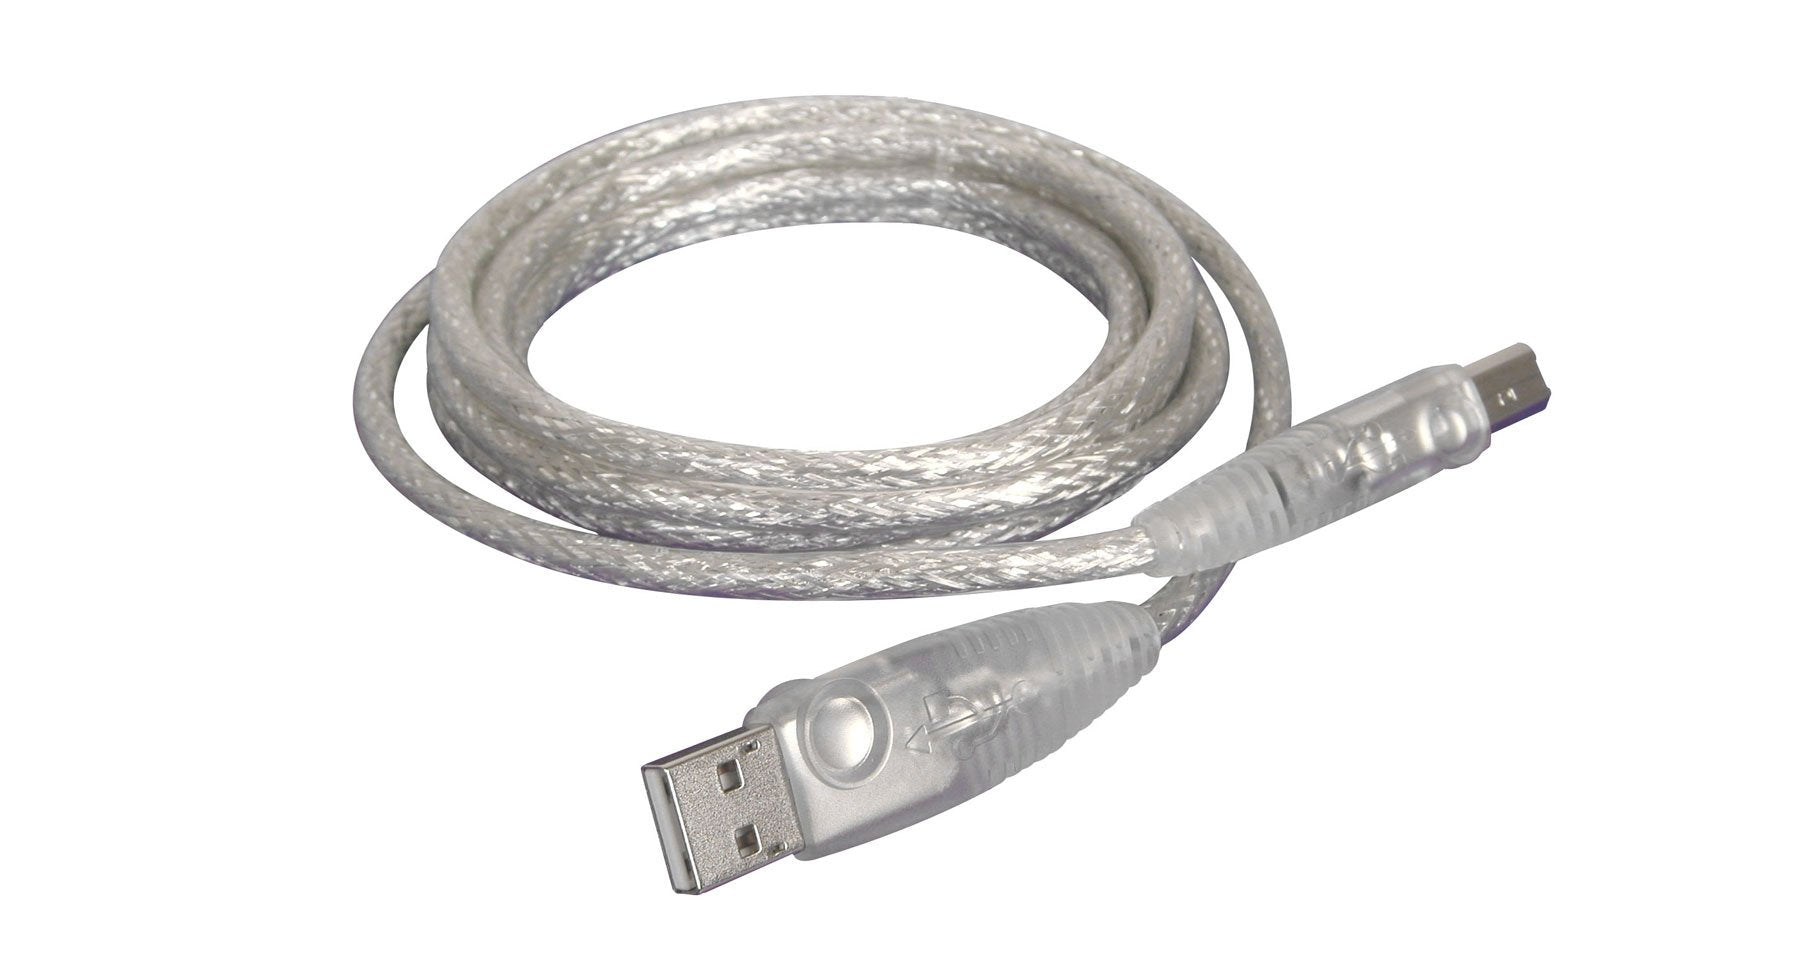 Iogear 10ft USB 2.0 Cable A-B(G2LUAB10P)